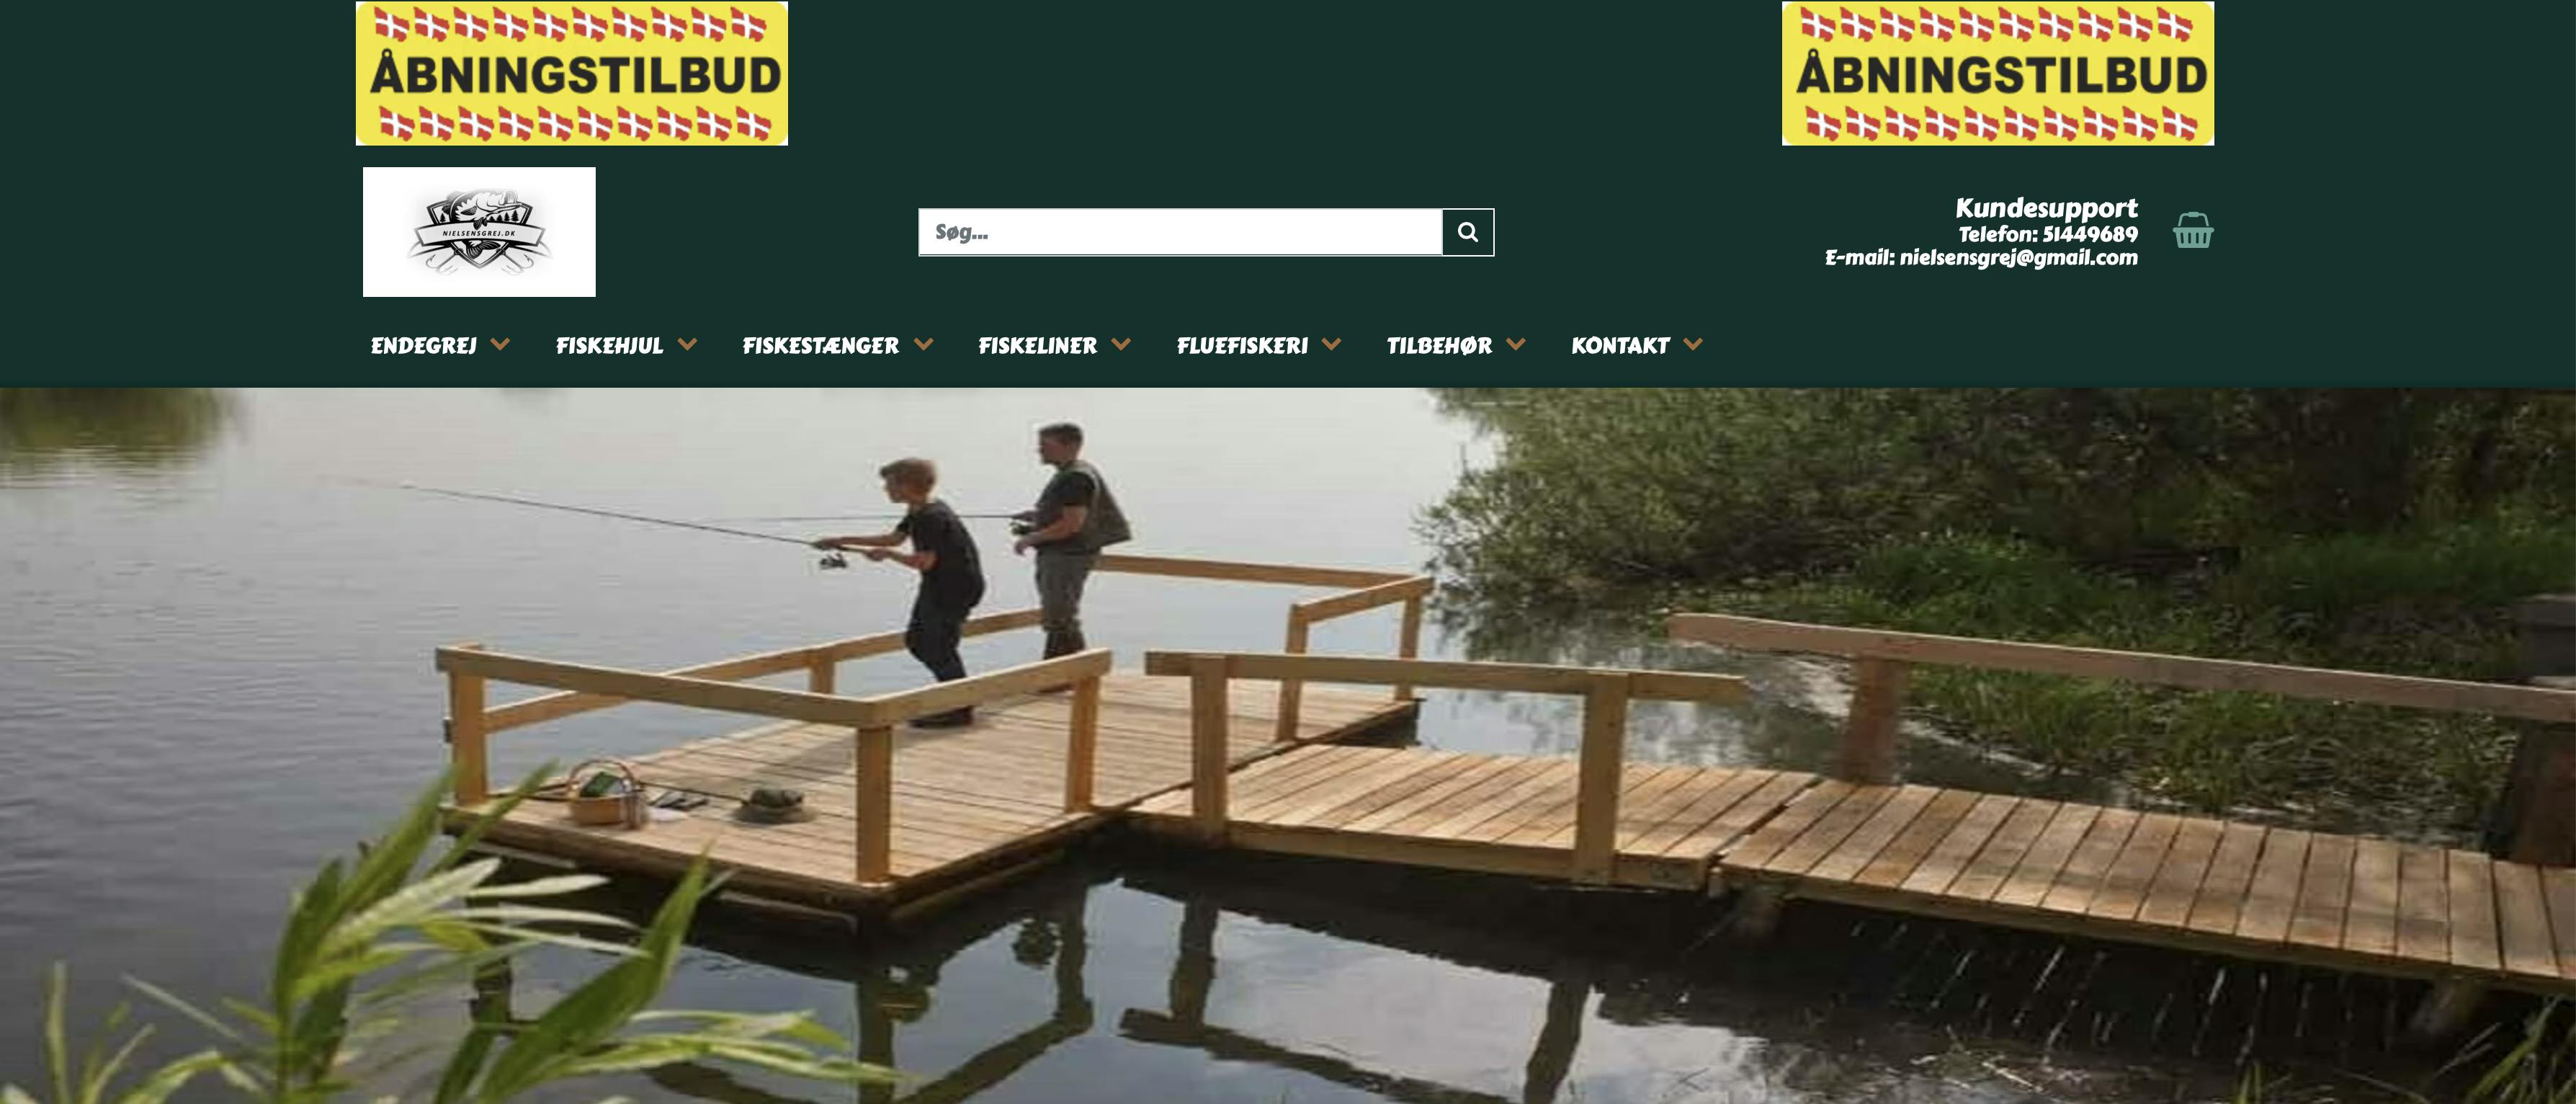 Ny webshop med fiskegrej til salg